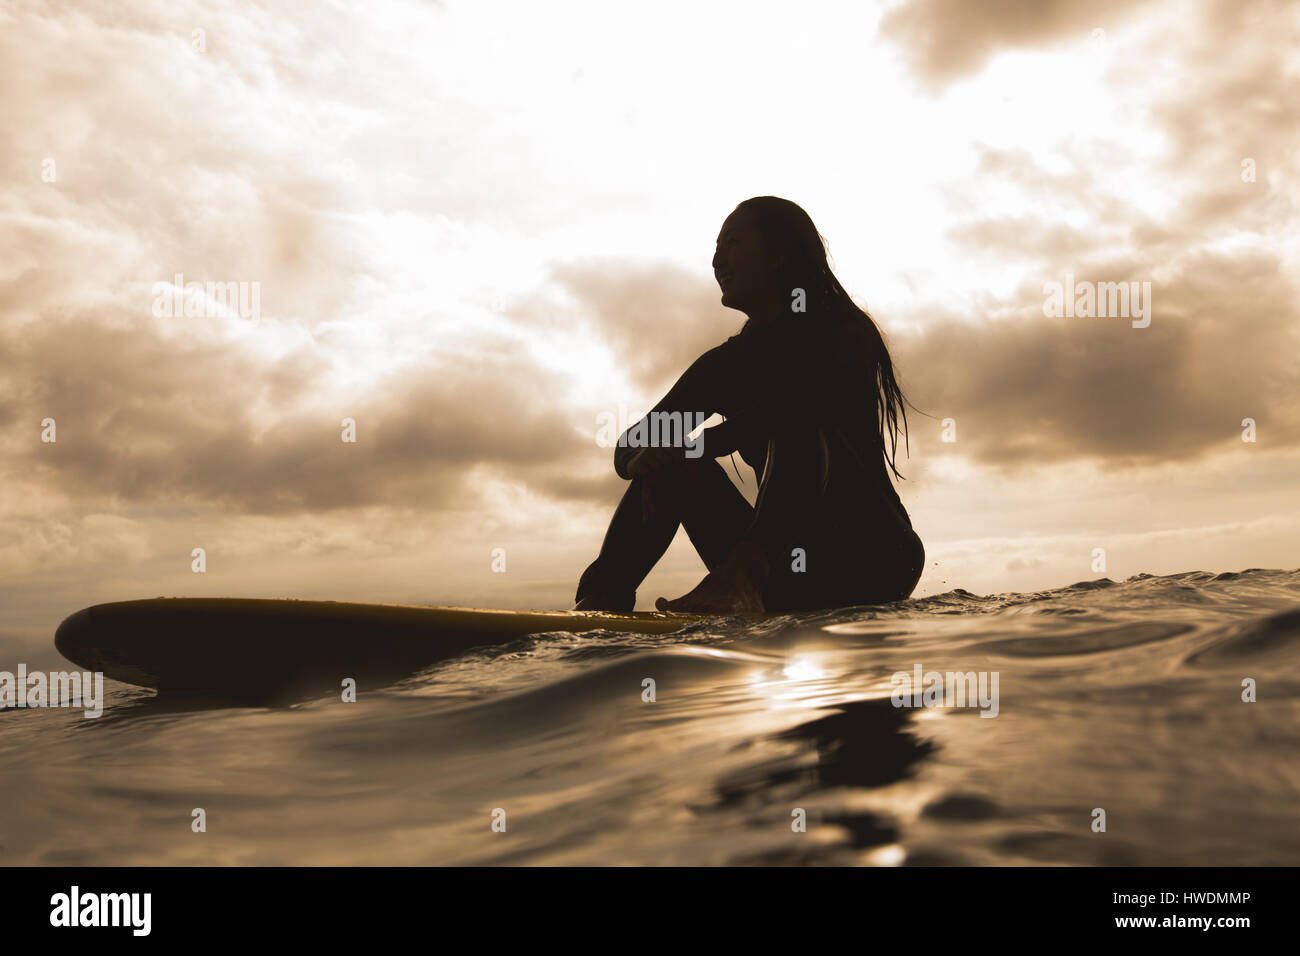 Junge Frau im Meer, sitzen auf Surfbrett Stockfoto